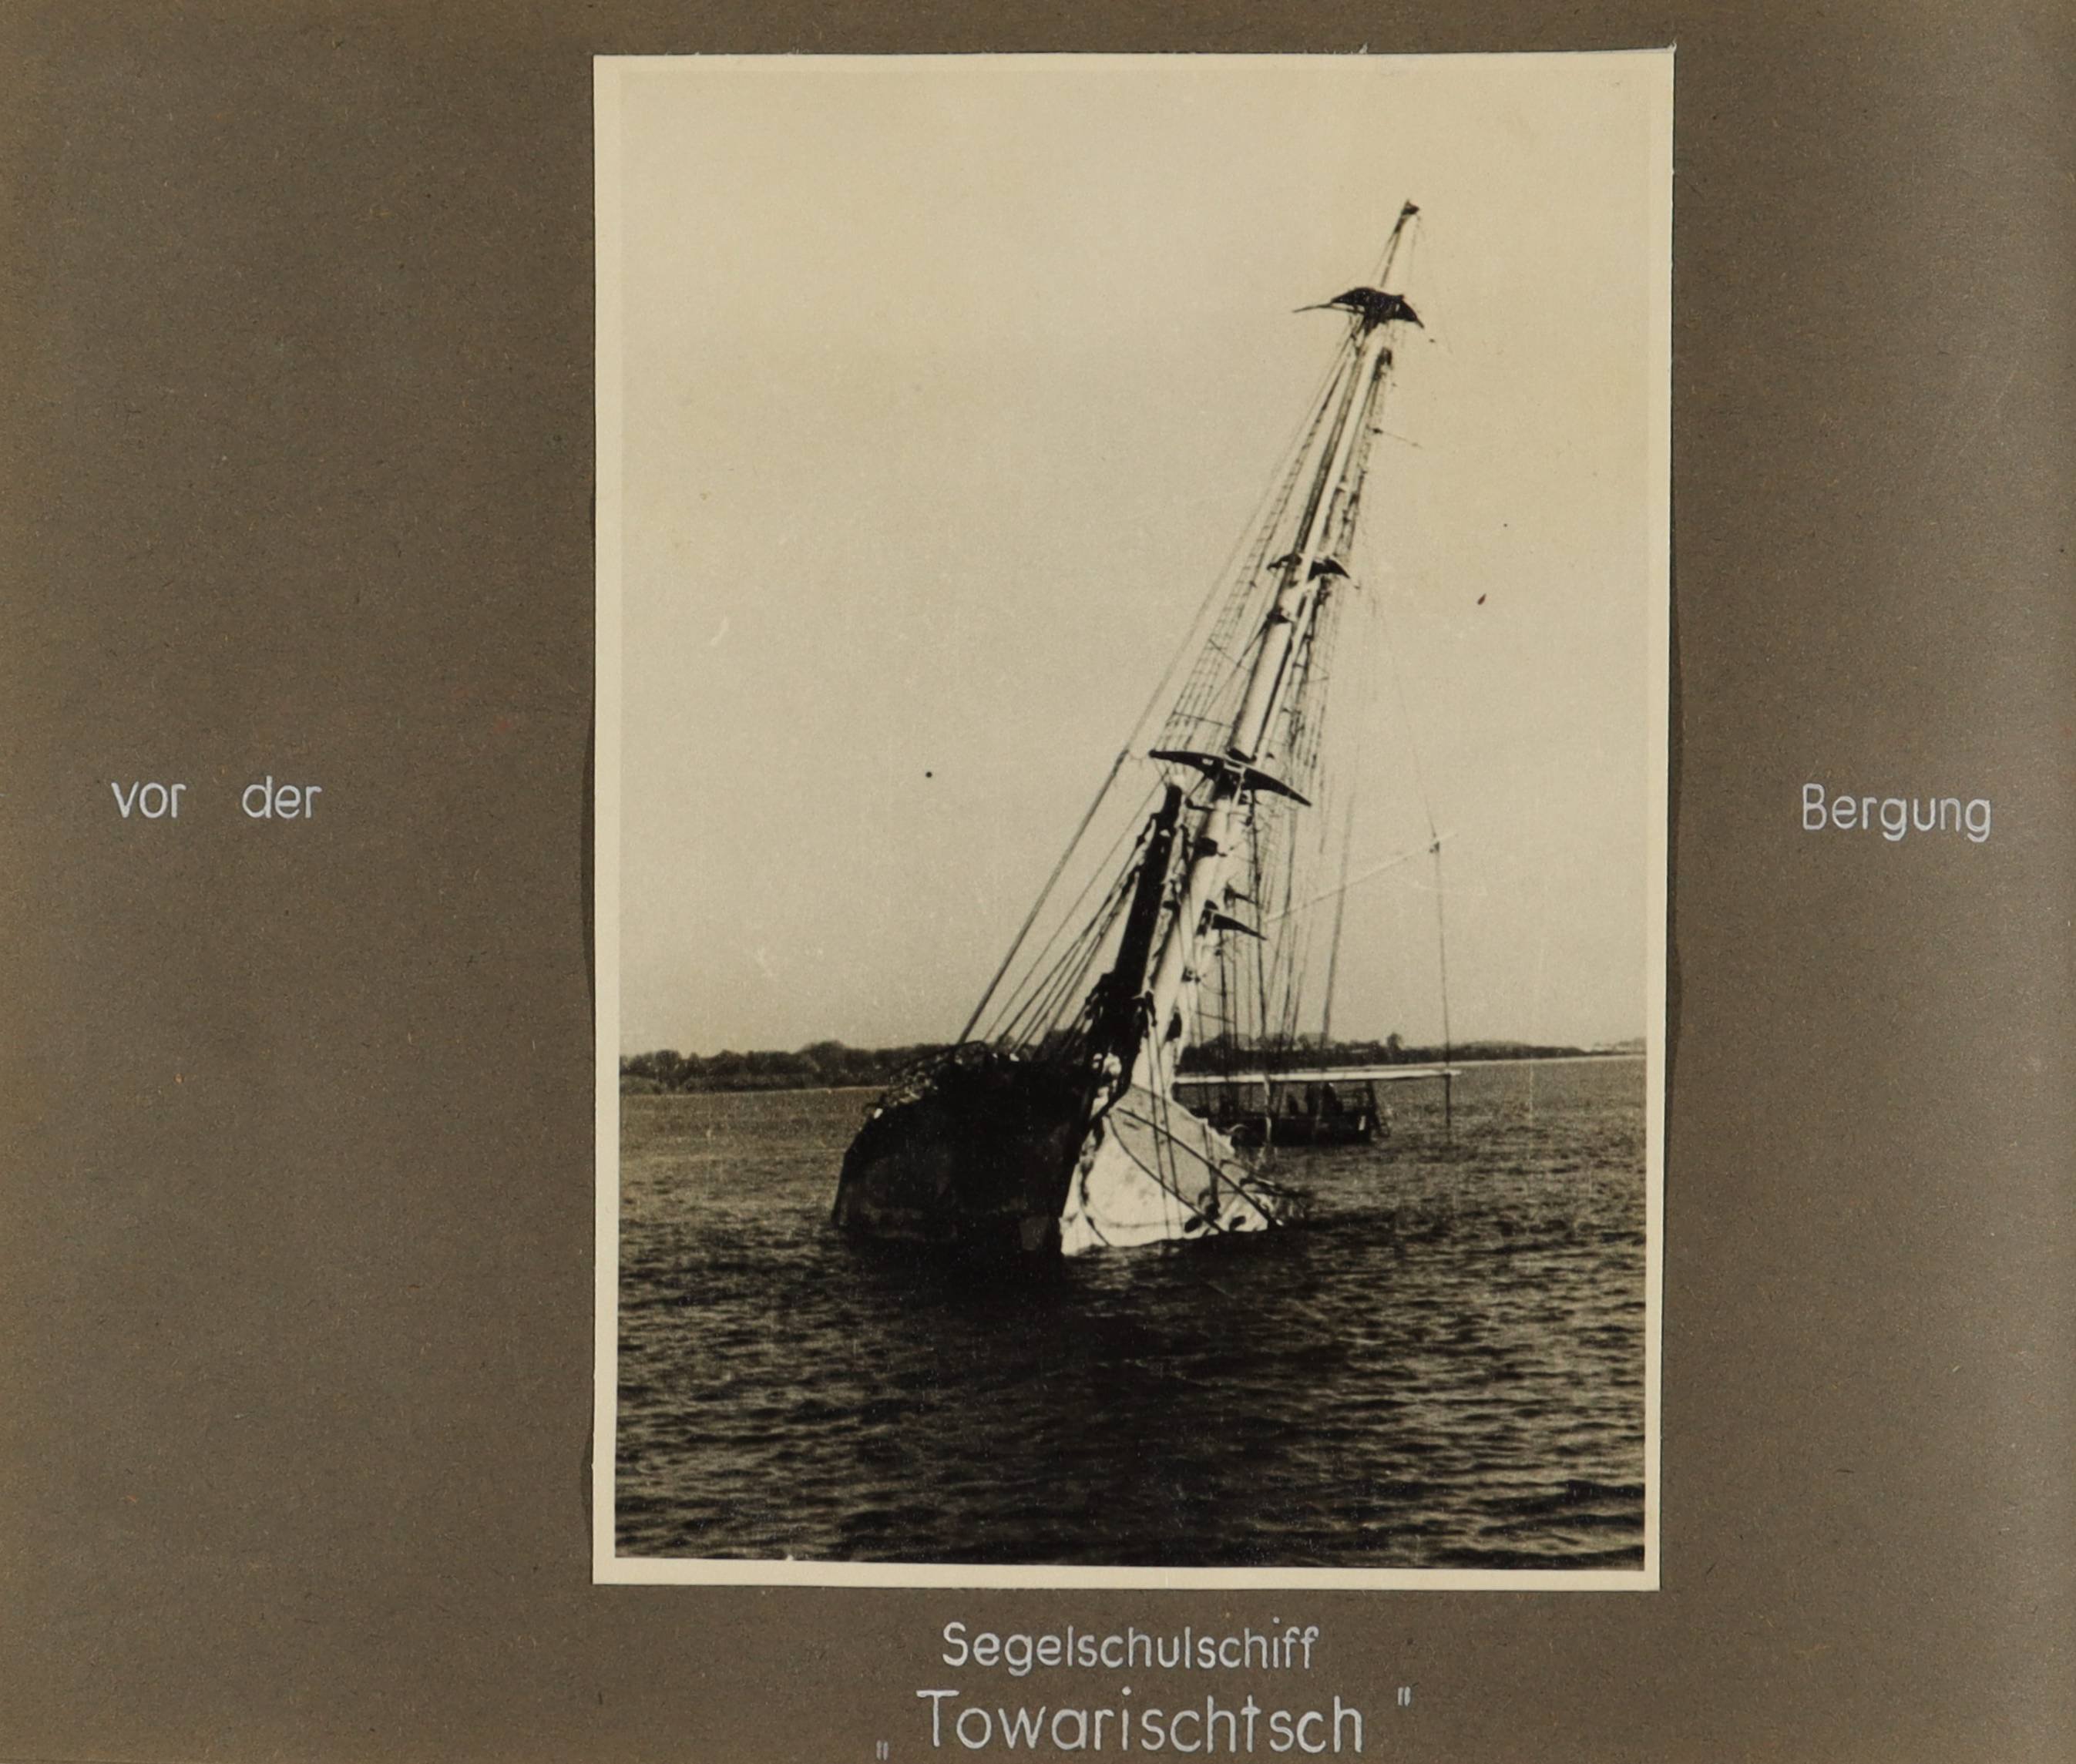 Das Segelschulschiff "Gorch Fock I" (die spätere "Towarischtsch") vor der Bergung (Schiffbau- und Schiffahrtsmuseum Rostock RR-F)